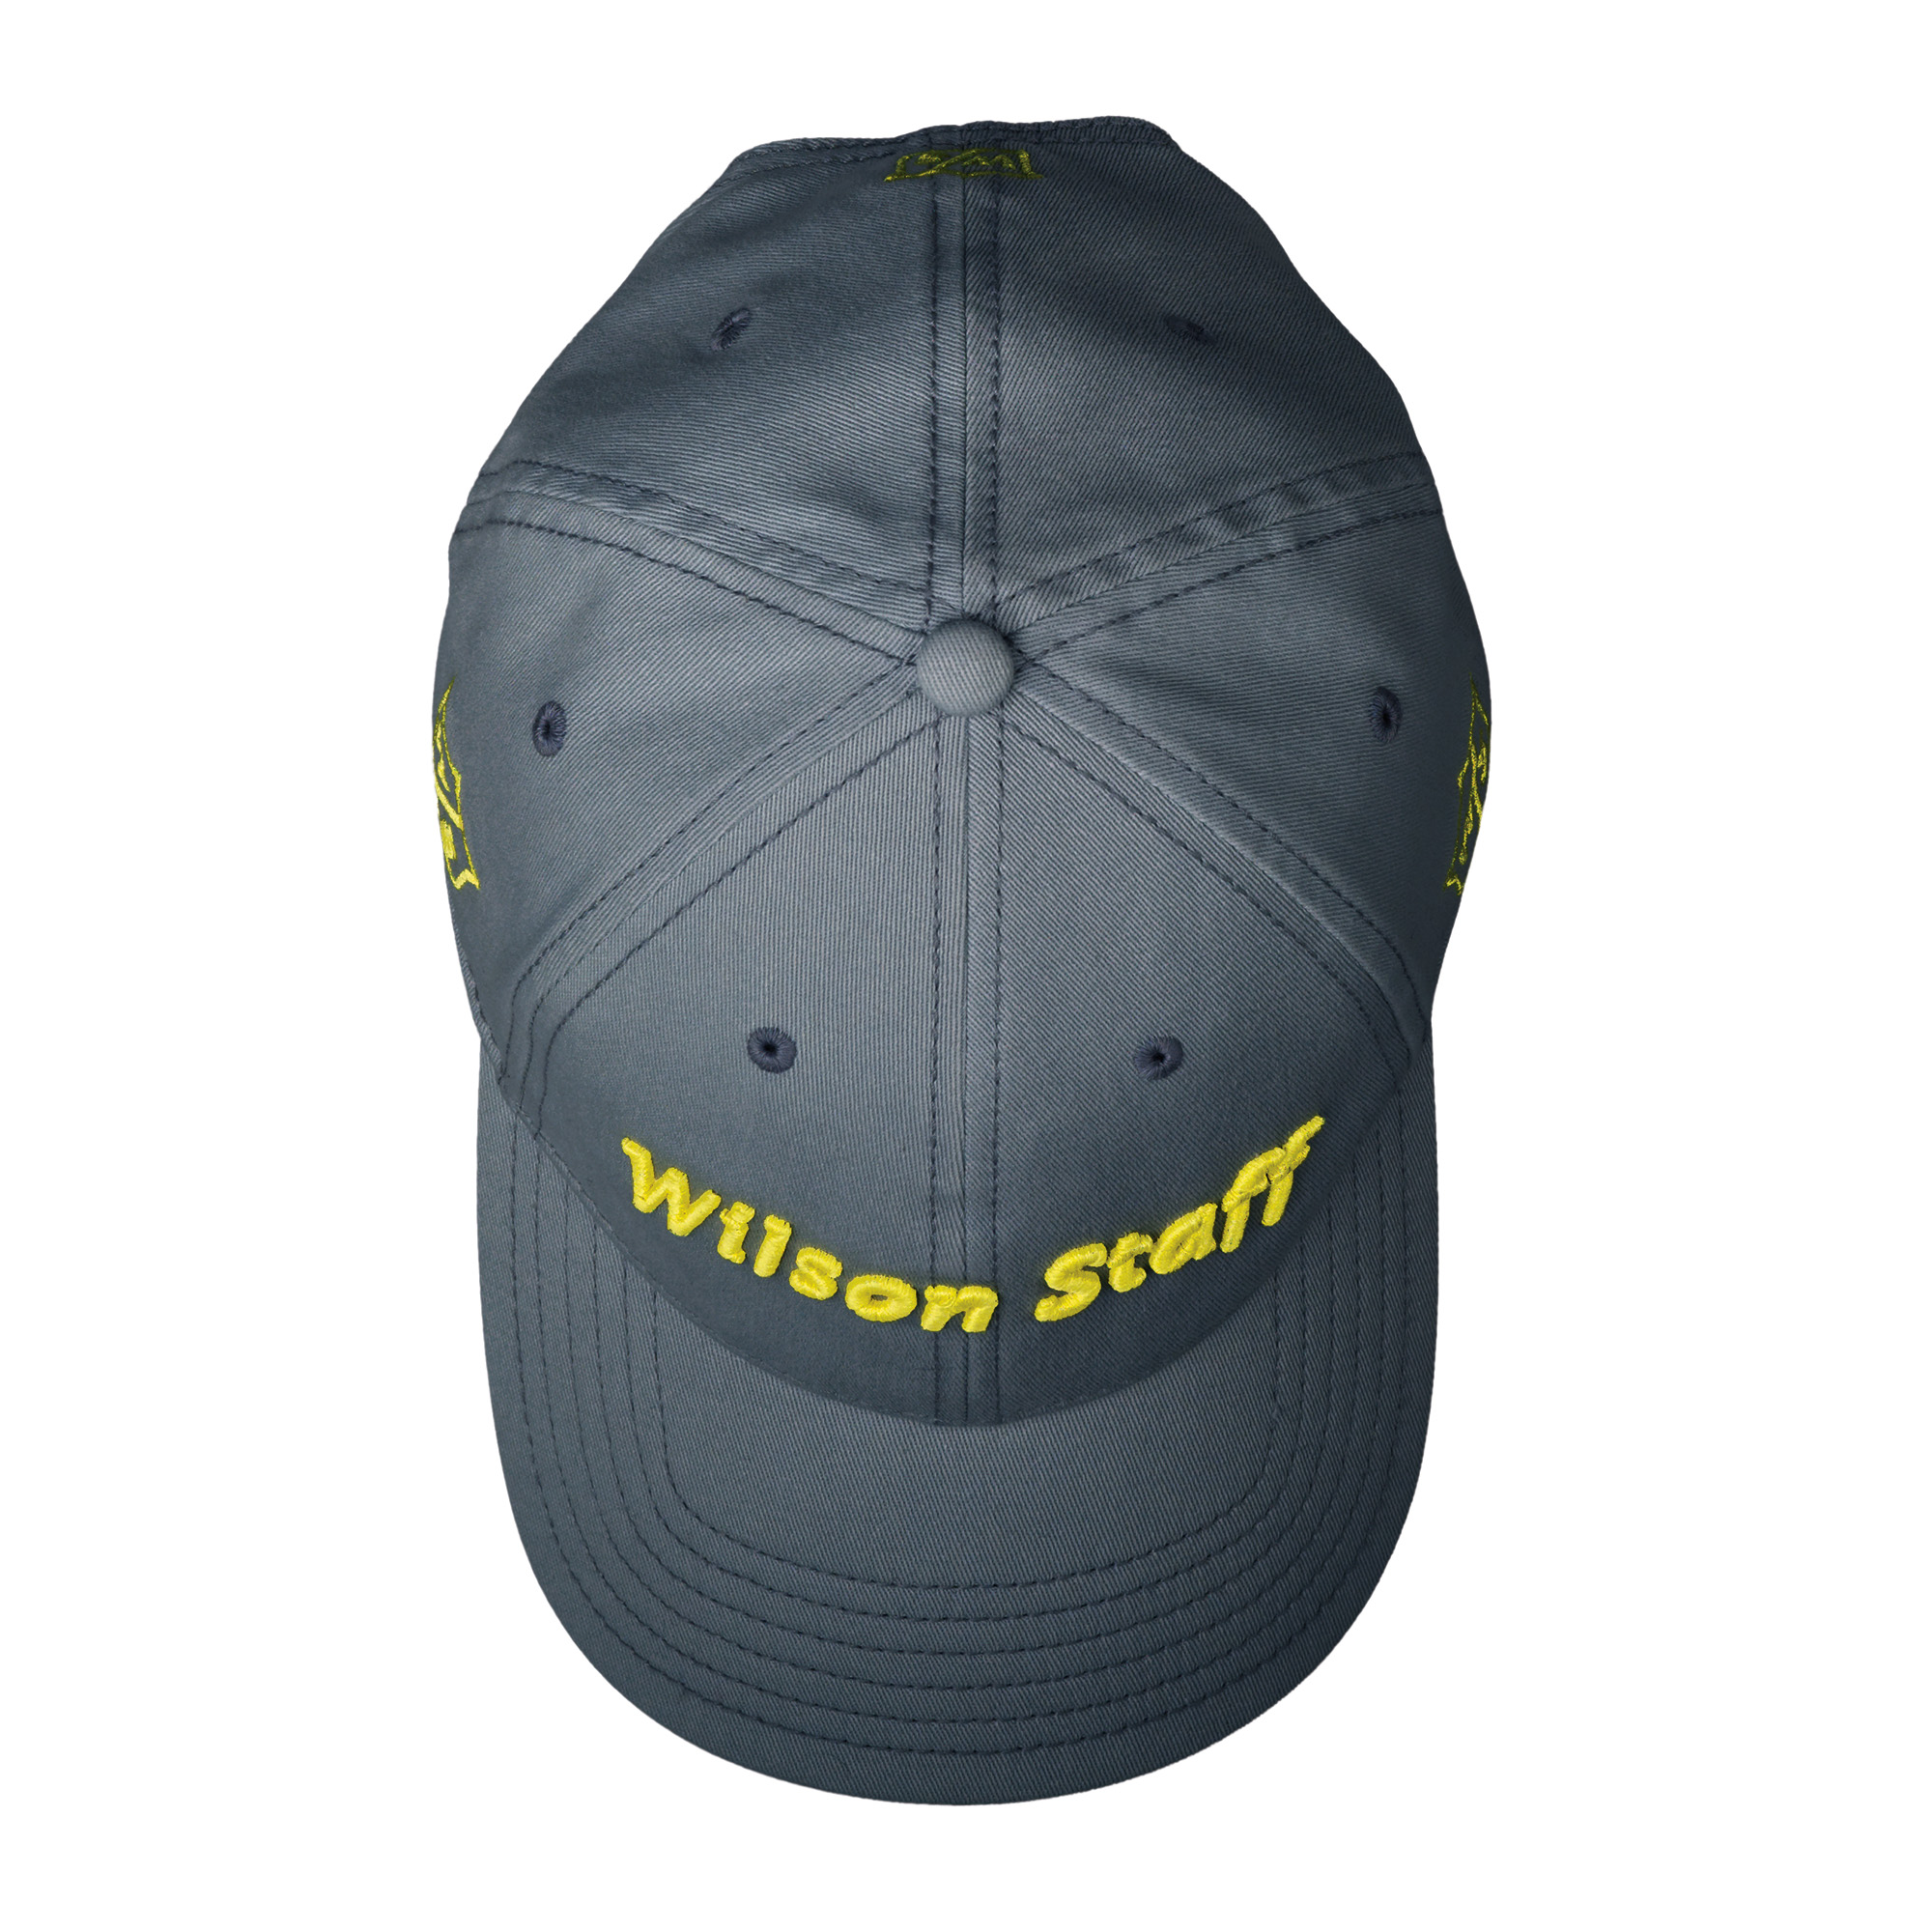 Wilson Staff Pro Relaxed dámská golfová čepice, šedá/žlutá DOPRODEJ